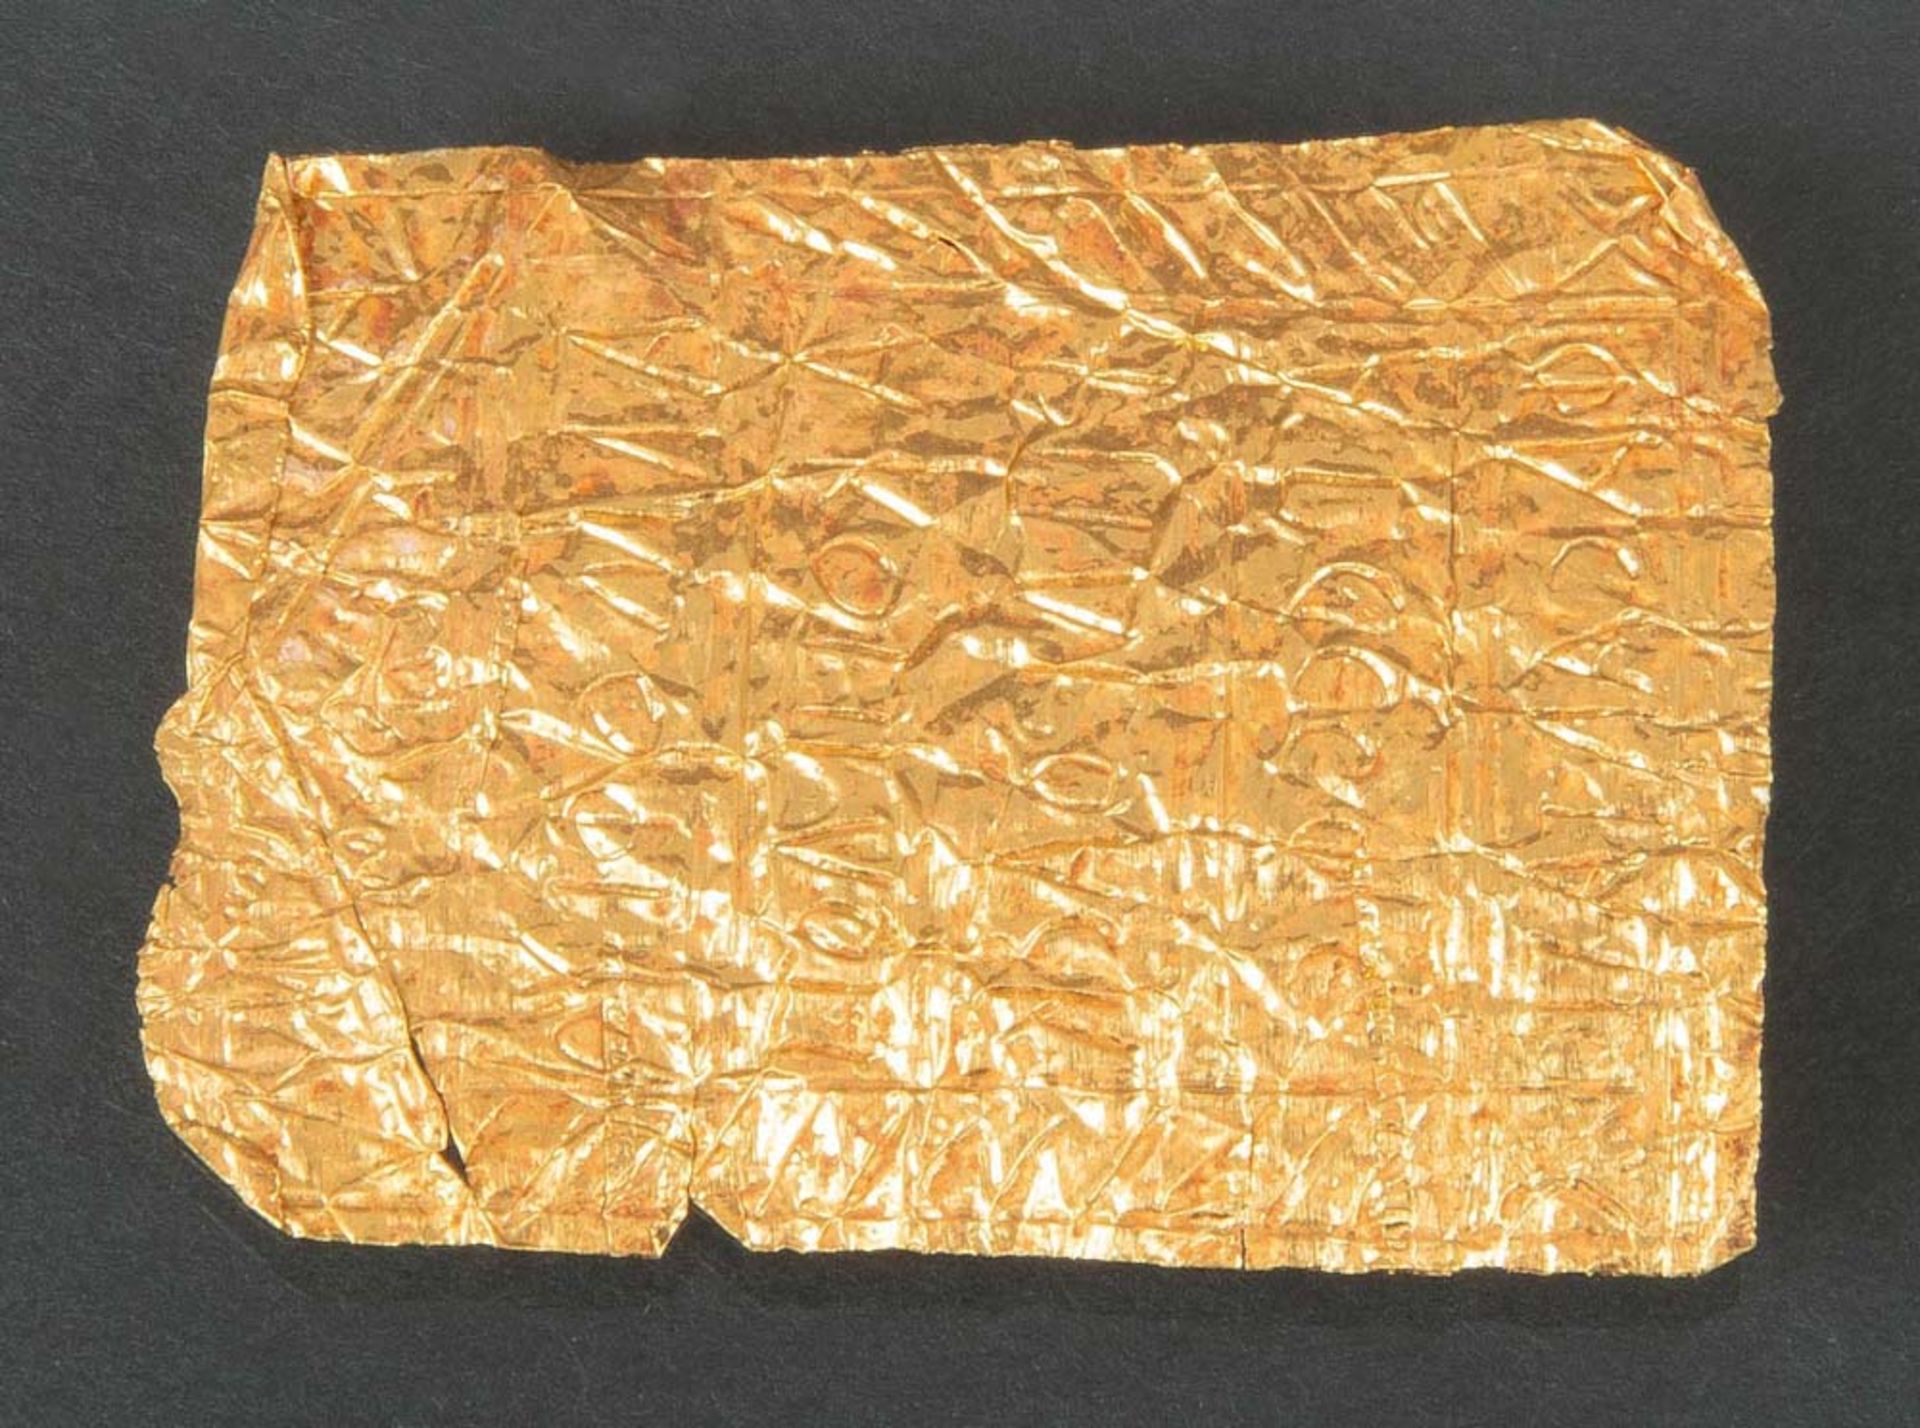 Rechteckiges Amulett. Lt. Rechnung Griechisch 5./4. Jh. v. Chr. Dünnes Goldplättchen, beidseitig mit